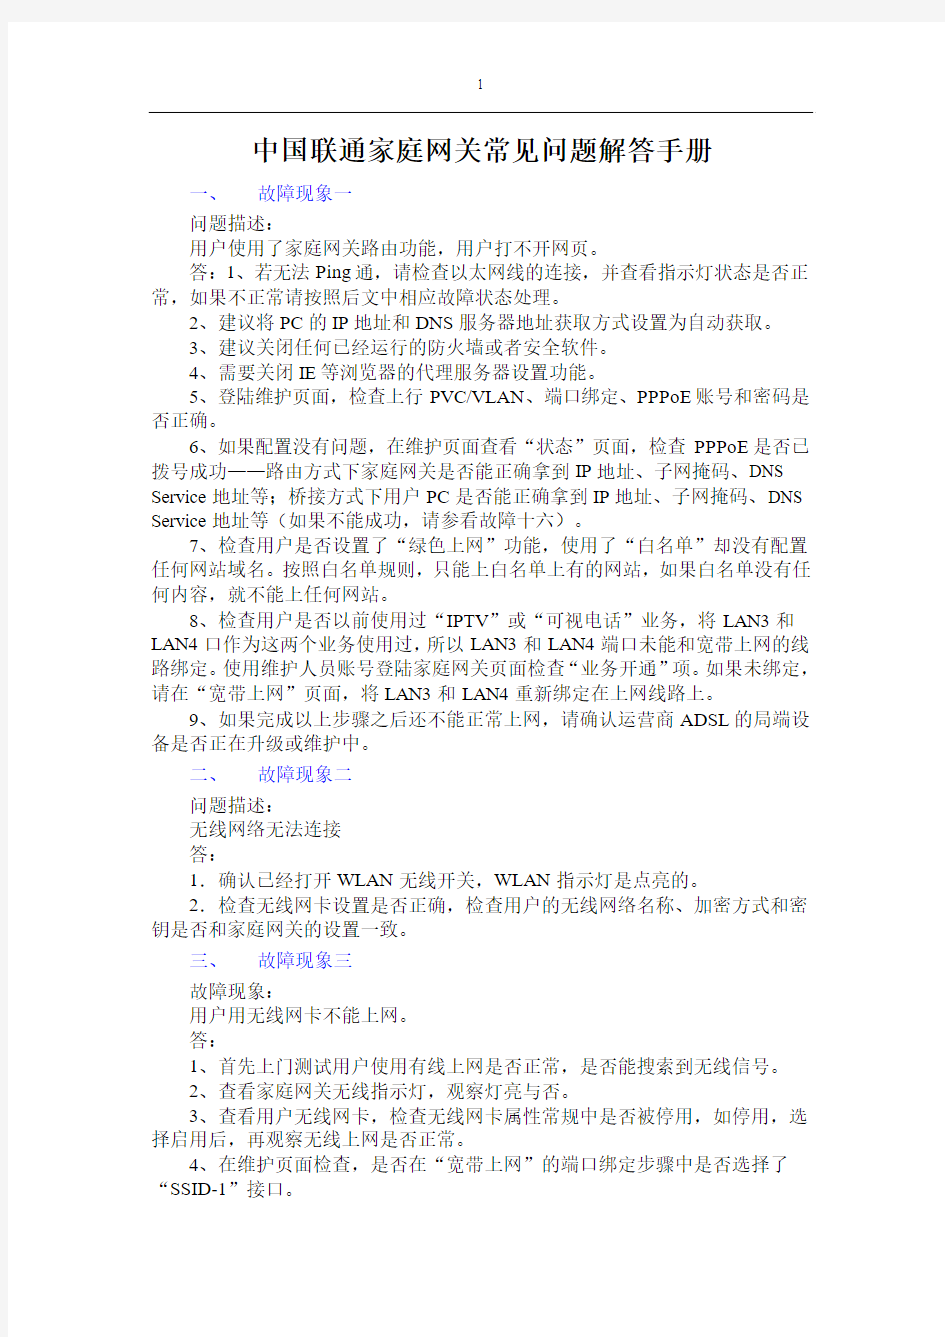 中国联通家庭网关常见问题解答手册